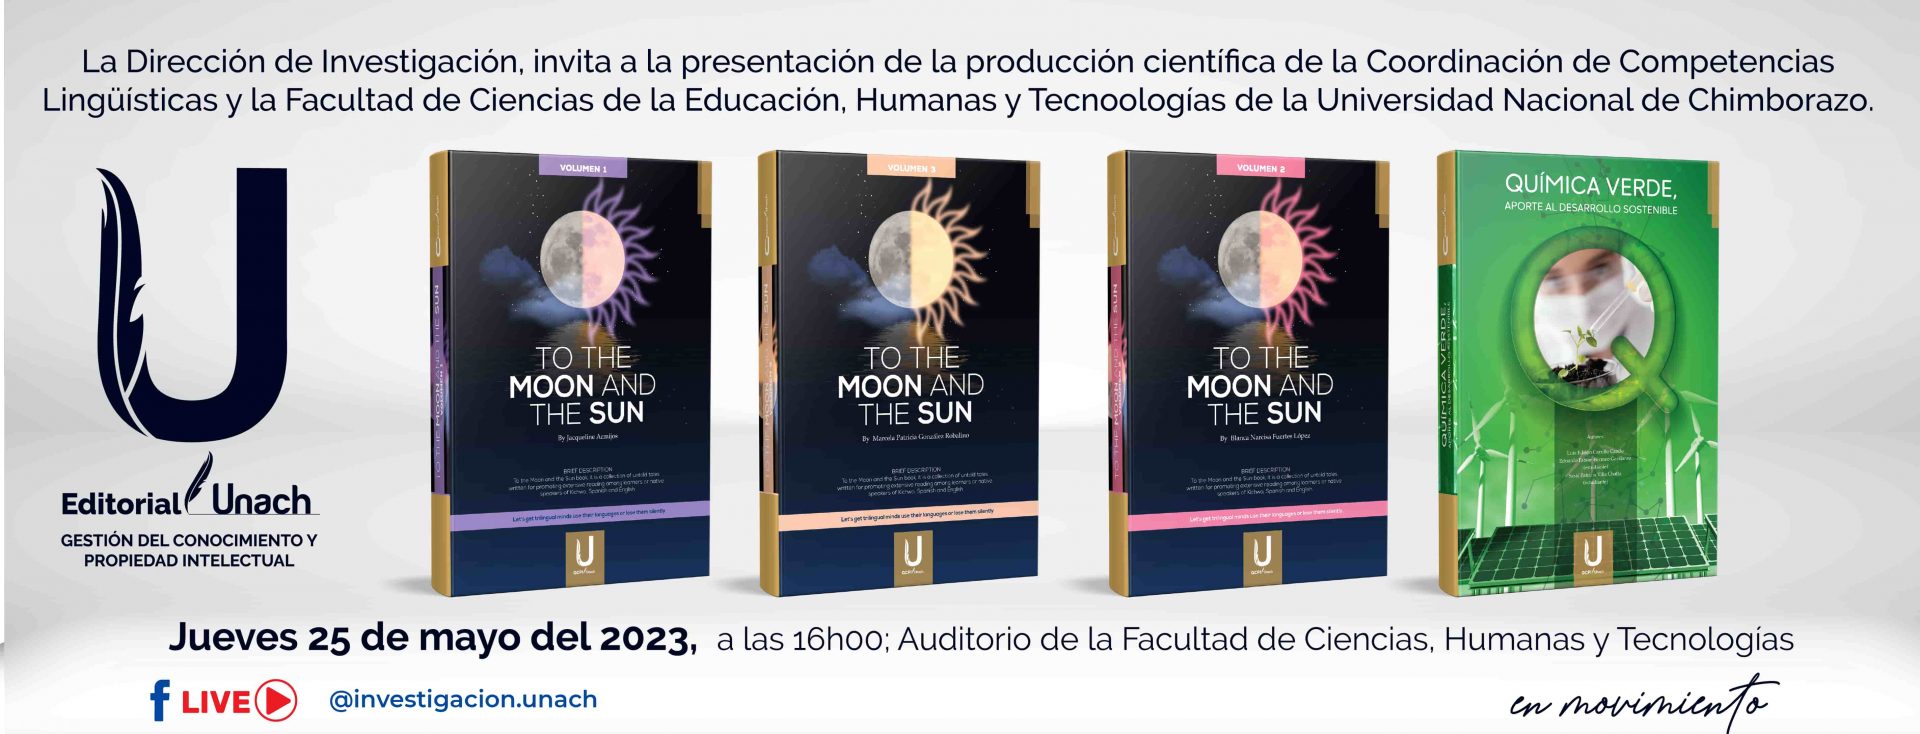 Presentación de la producción científica de la Coordinación de Competencias Lingüísticas y la Facultad de Ciencias de la Educación, Humanas y Tecnologías de la Universidad Nacional de Chimborazo